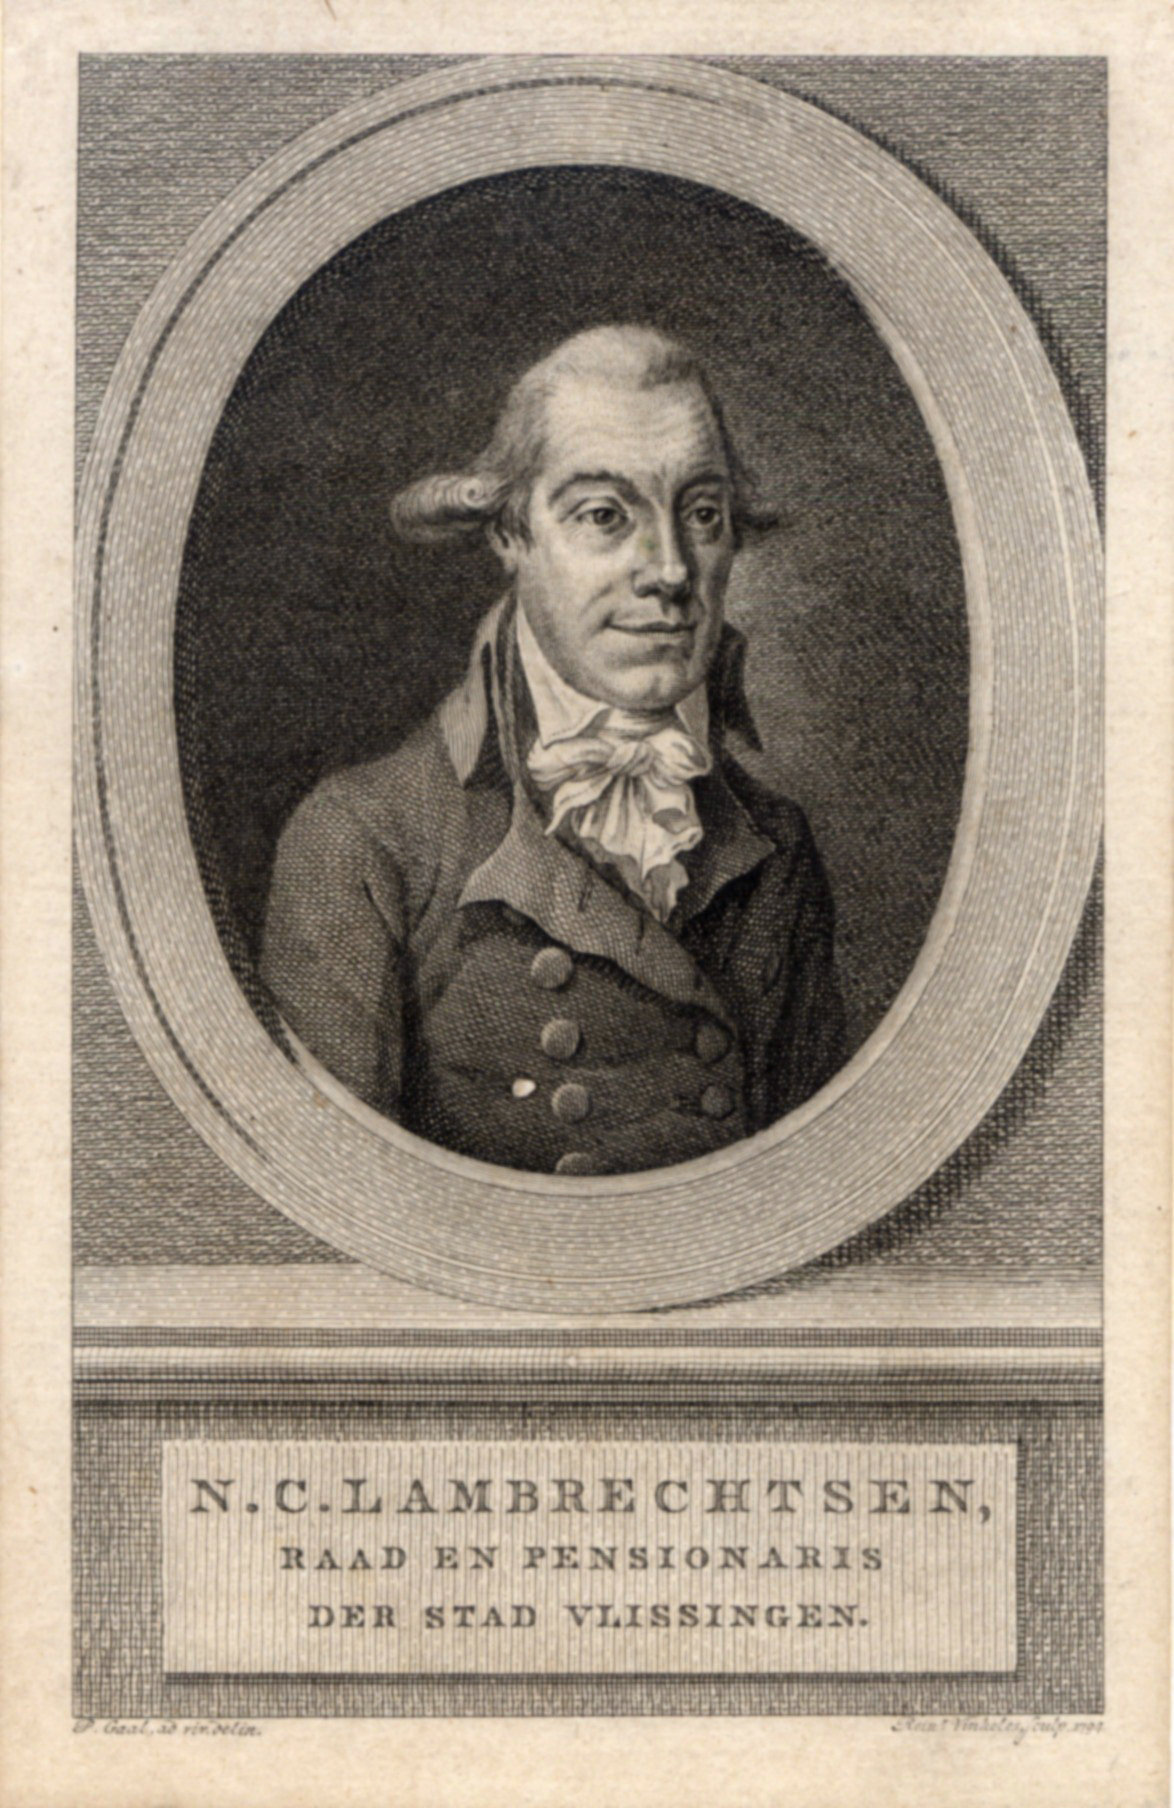 N.C. Lambrechtsen, raad en pensionaris van Vlissingen, 1794.